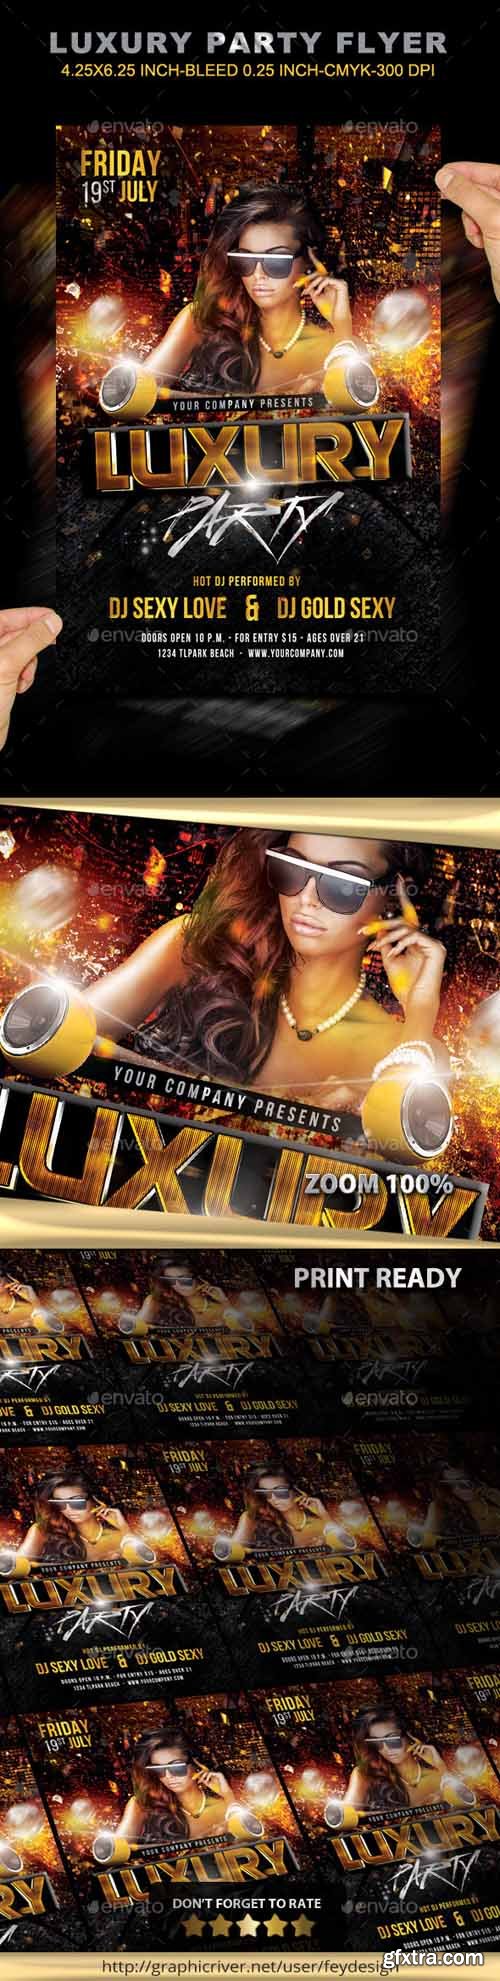 GR - Luxury Party Flyer 11759370